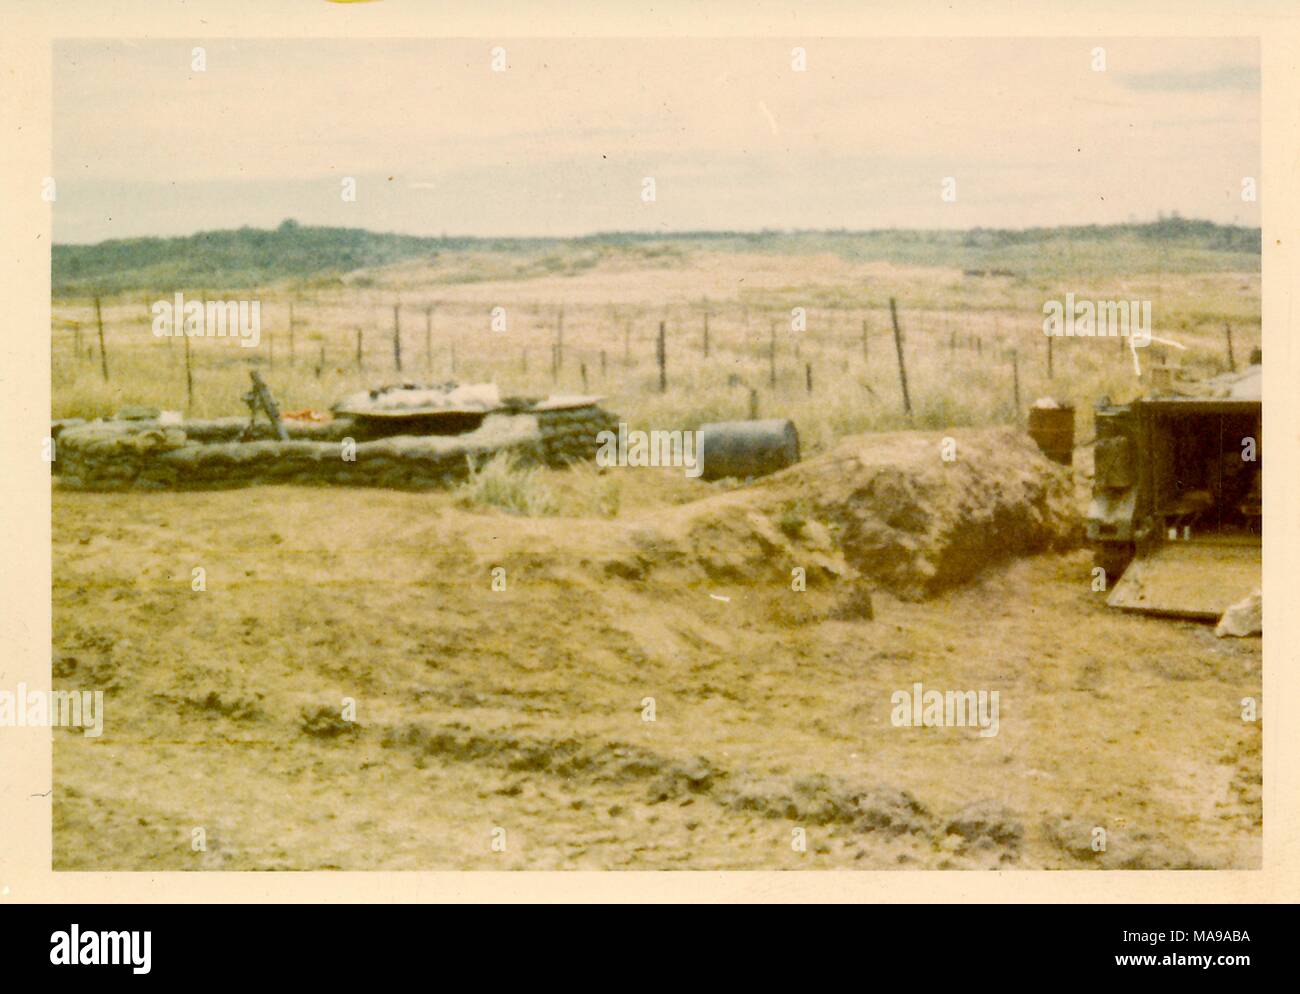 Farbe Foto von einem sandsack Bunker, mit einer offenen militärischen Fahrzeug auf der rechten Seite, in einem Land, Landschaft, in Vietnam während des Vietnam Krieges fotografiert (1955-1975), 1971. () Stockfoto